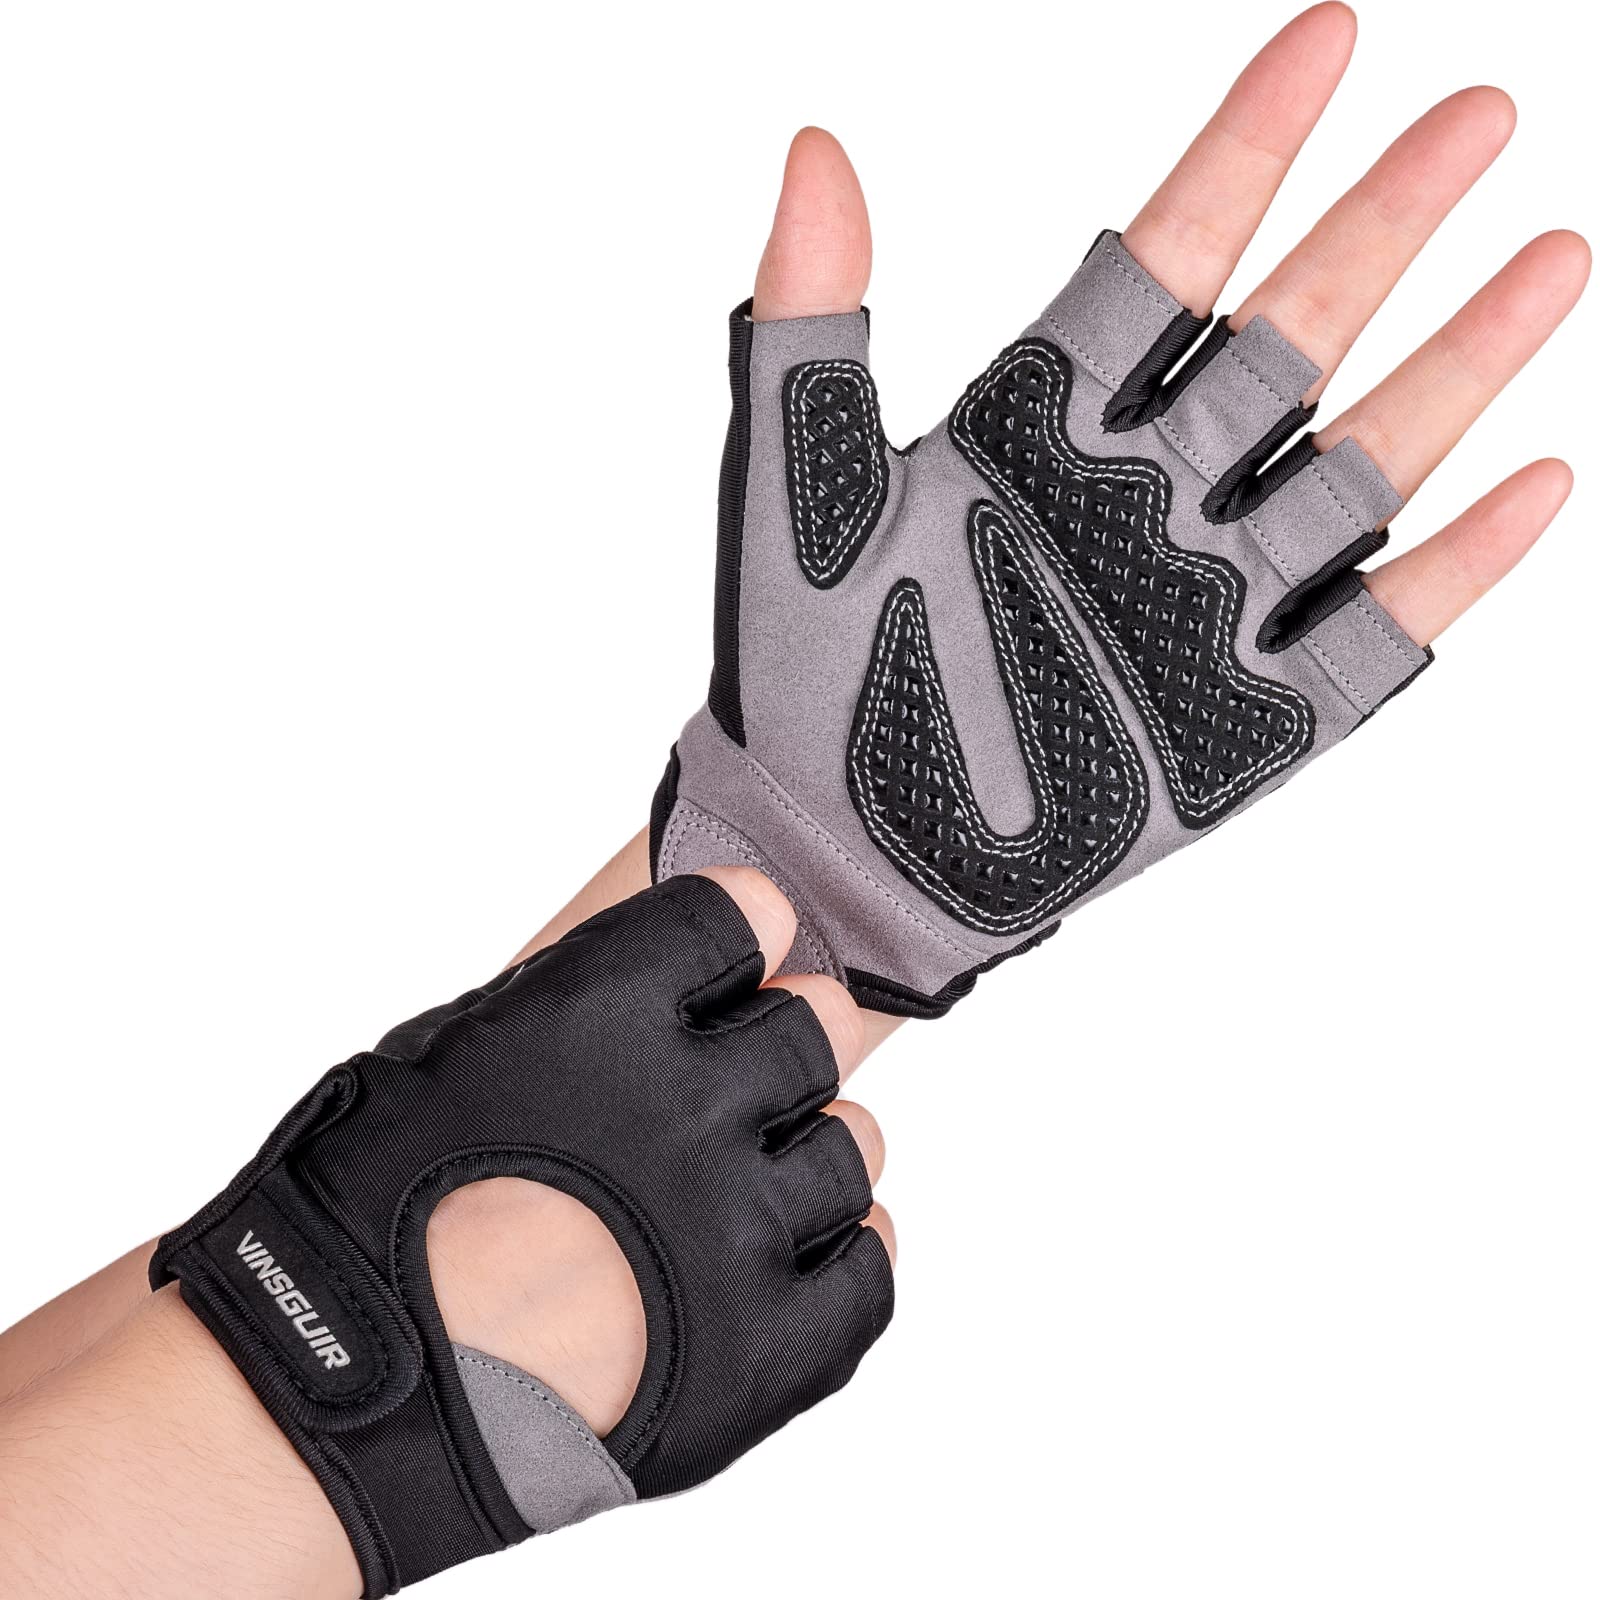 Vinsguir Workout Gloves for Men and Women Fingerless Weight